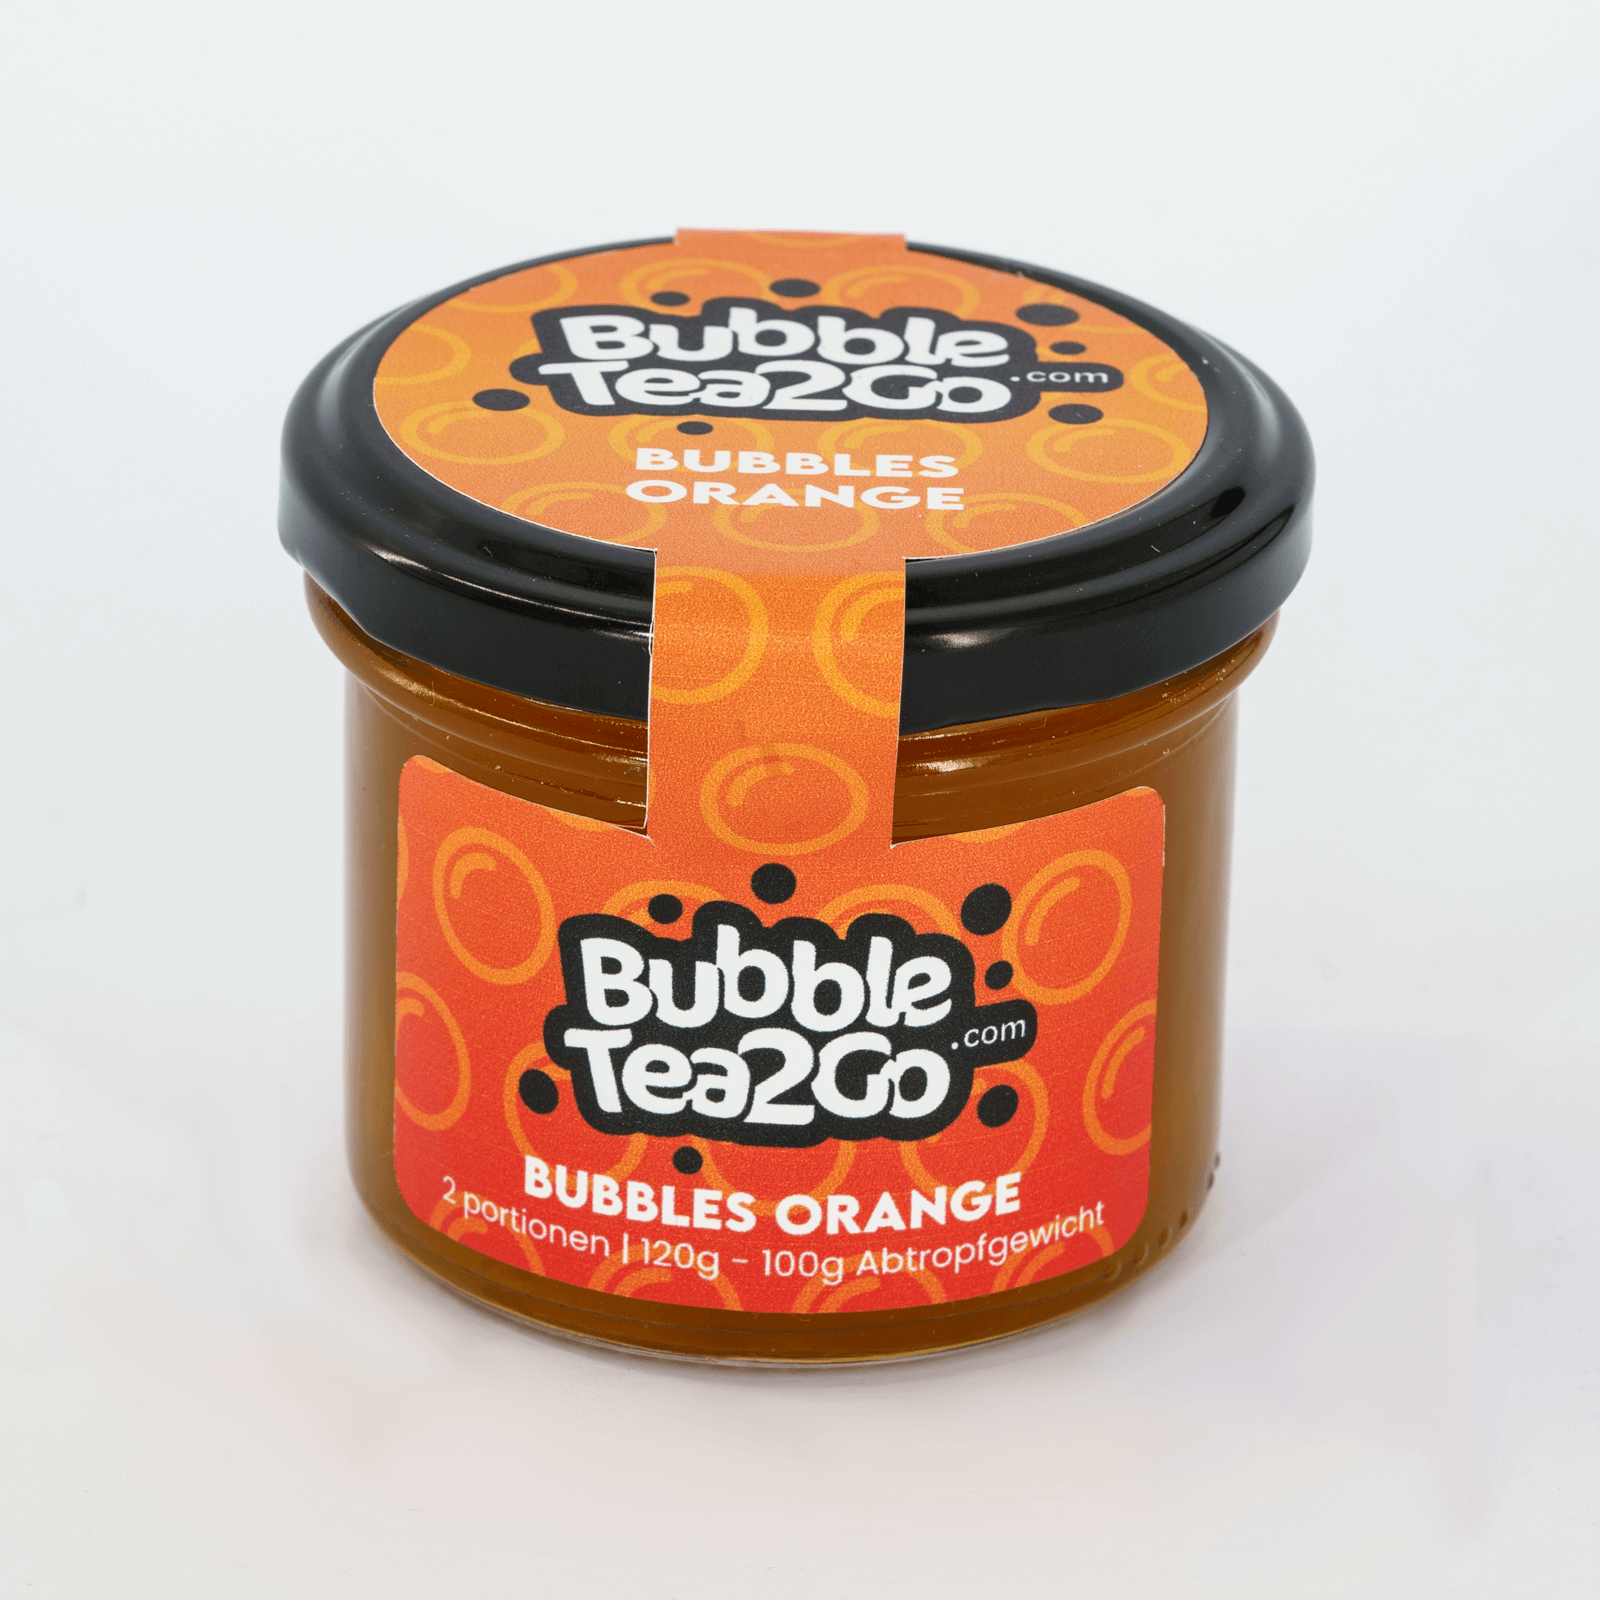 Bubbles - Orange 2 portions (120g)